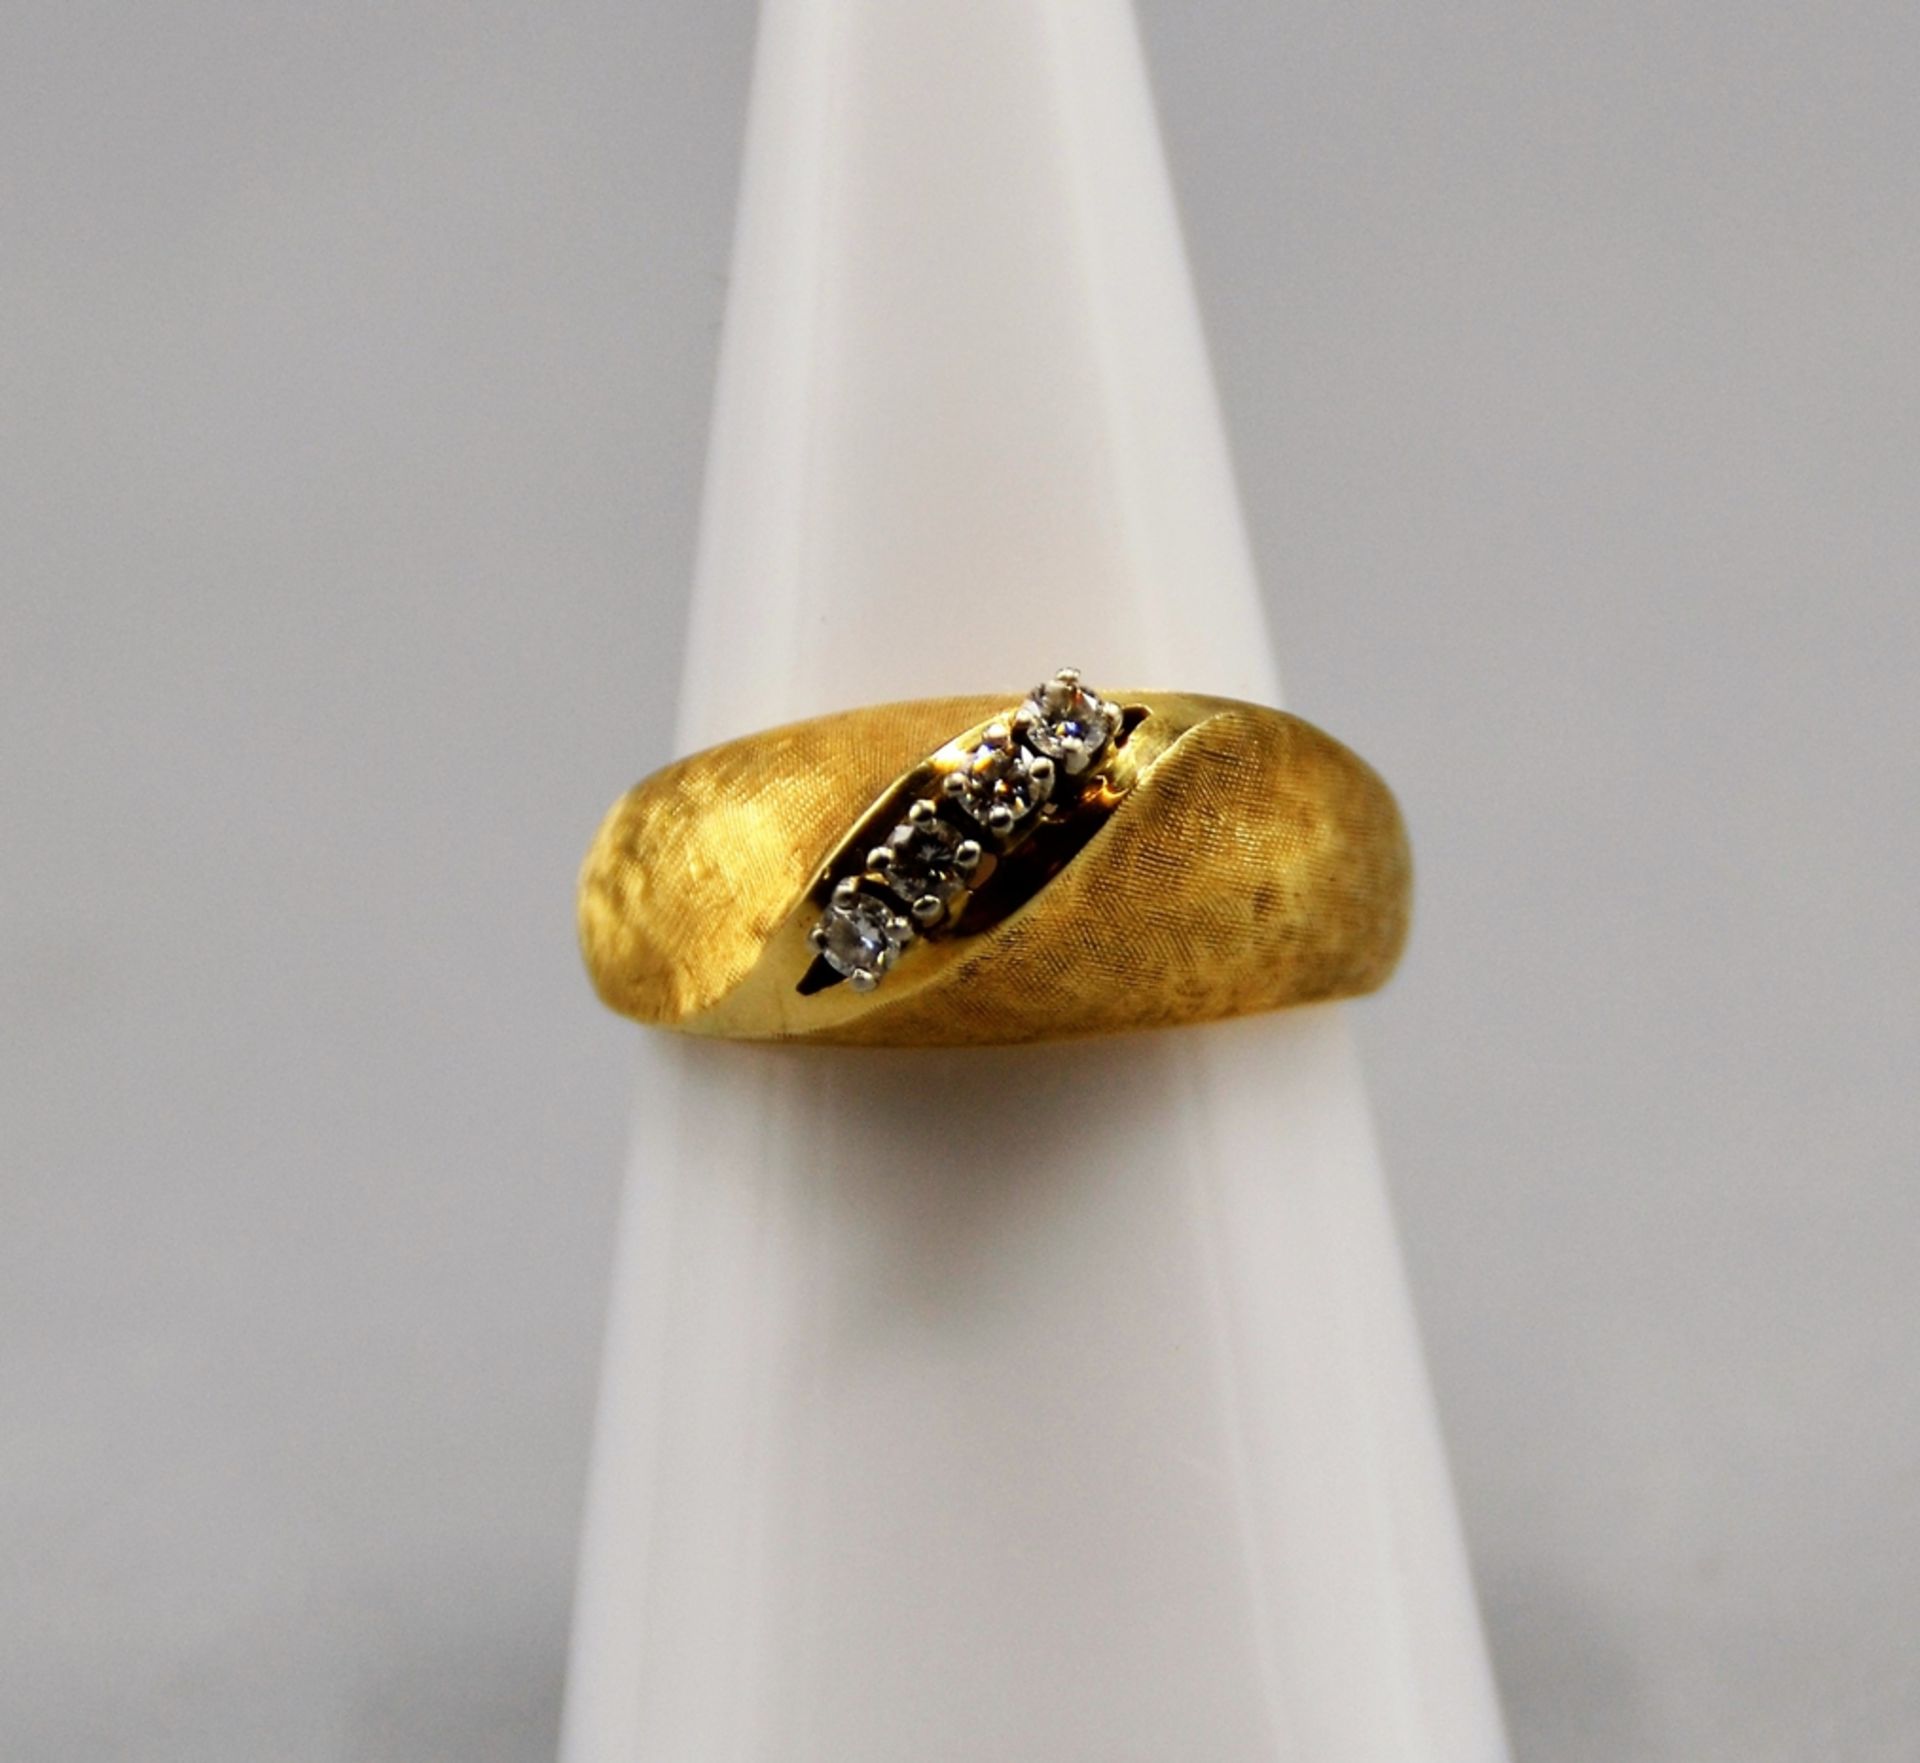 Brillantring Goldring 585 mit 4 kleinen Brillanten zus. ca. 0,2 ct., Ring Ø 17 mm, 7,8 g